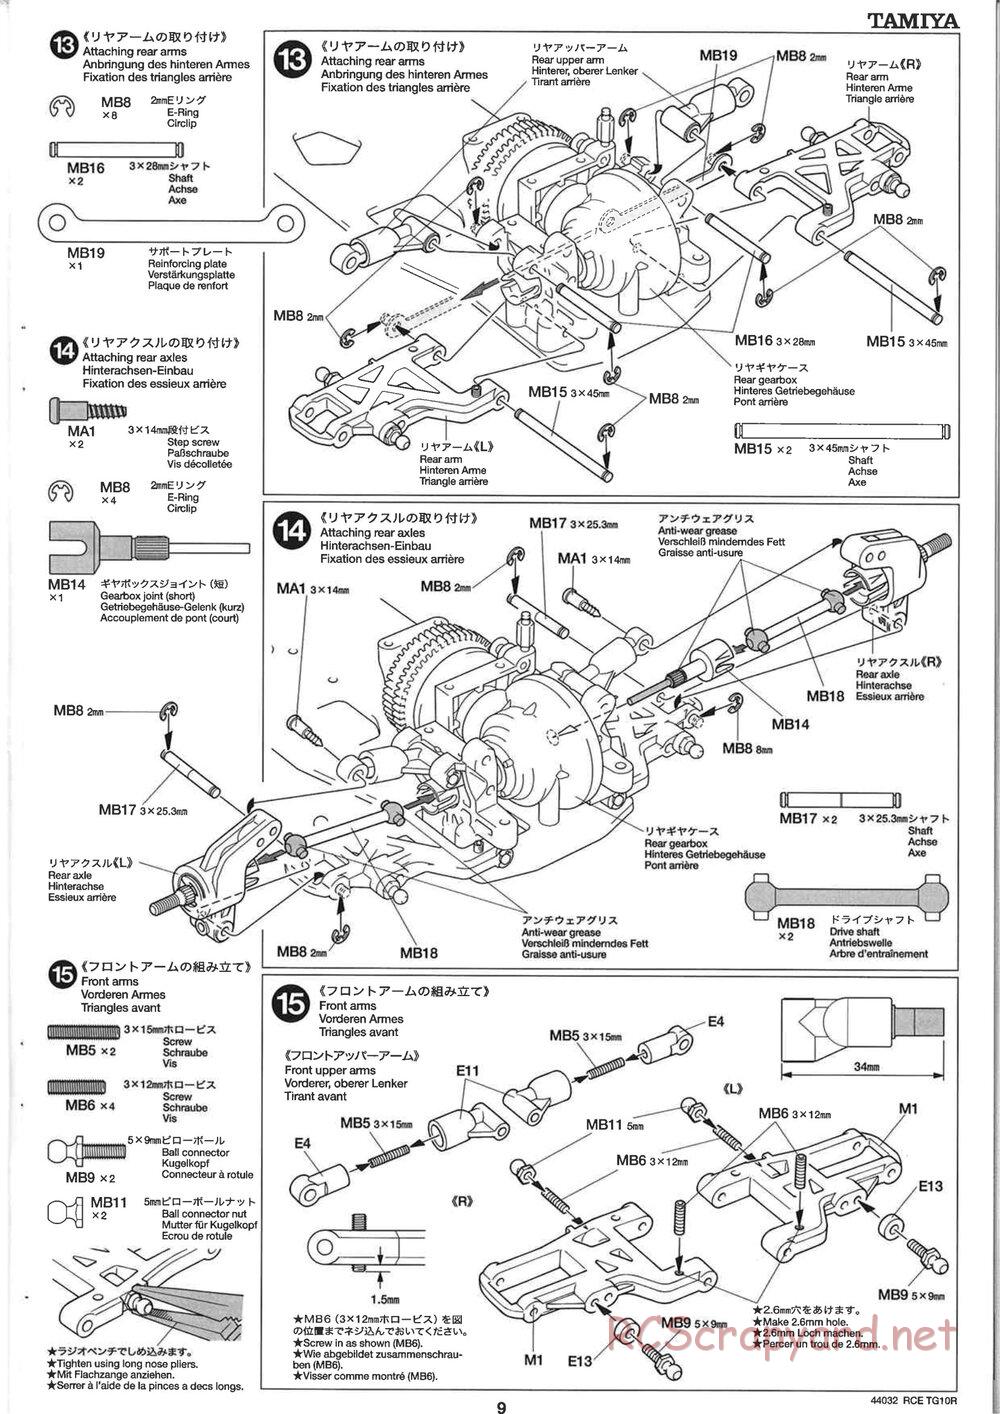 Tamiya - TG10R Chassis - Manual - Page 9